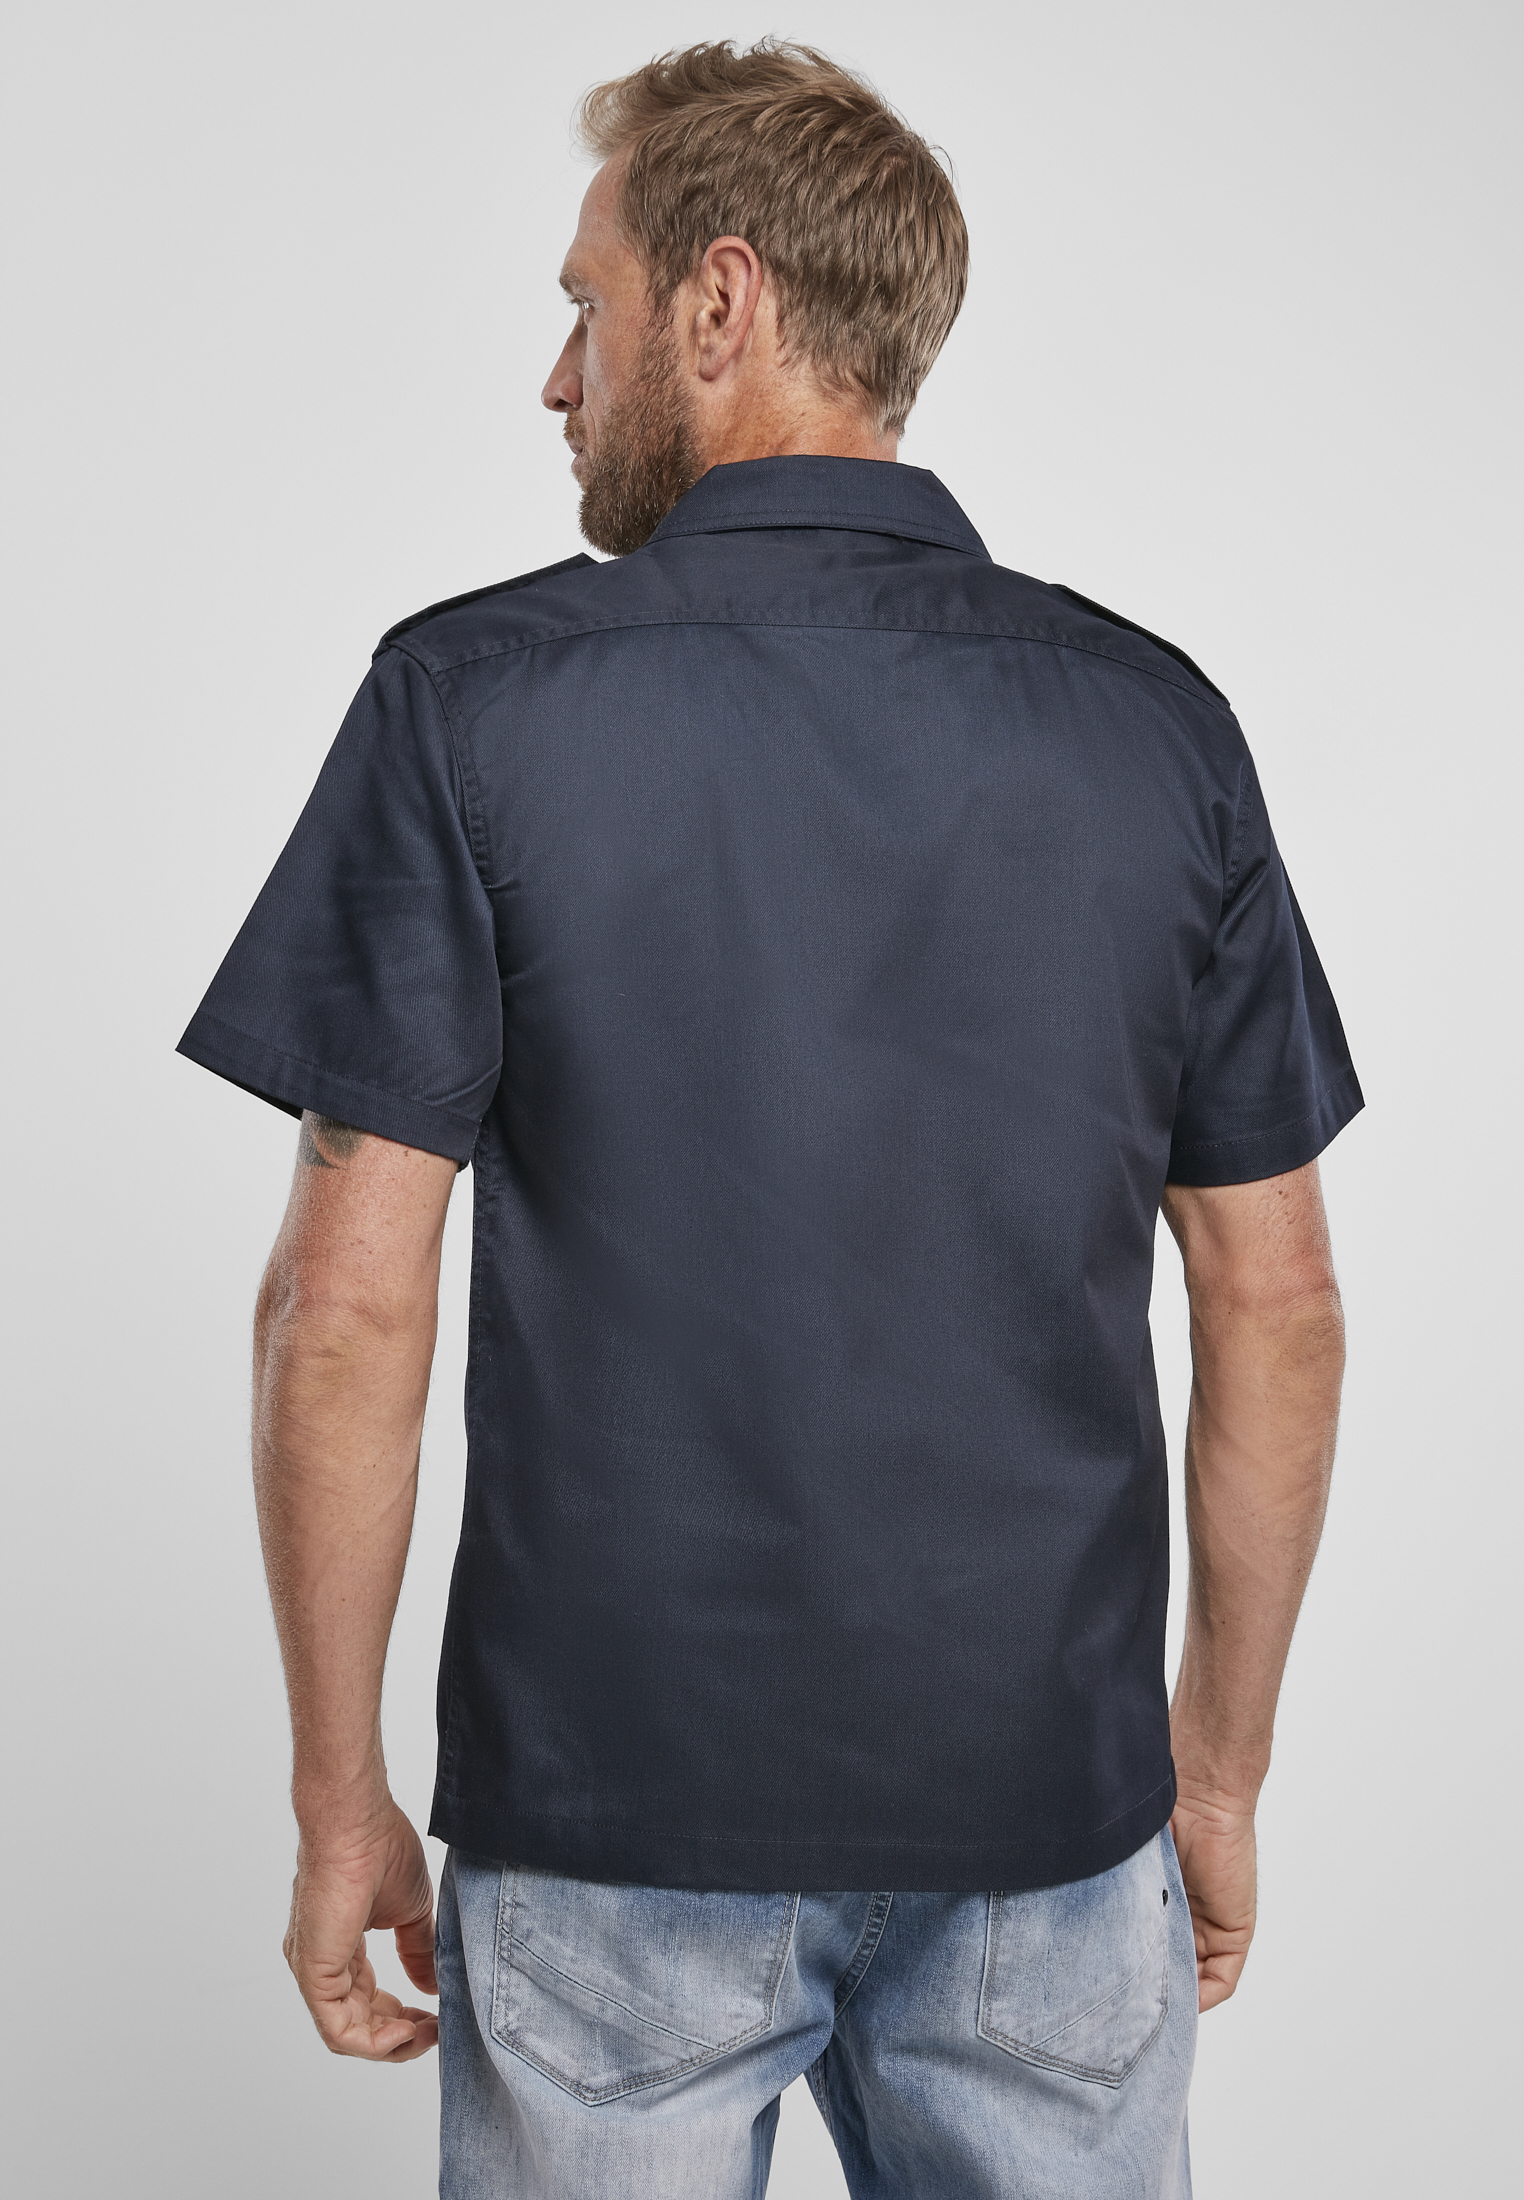 Hemden Short Sleeves US Shirt in Farbe navy